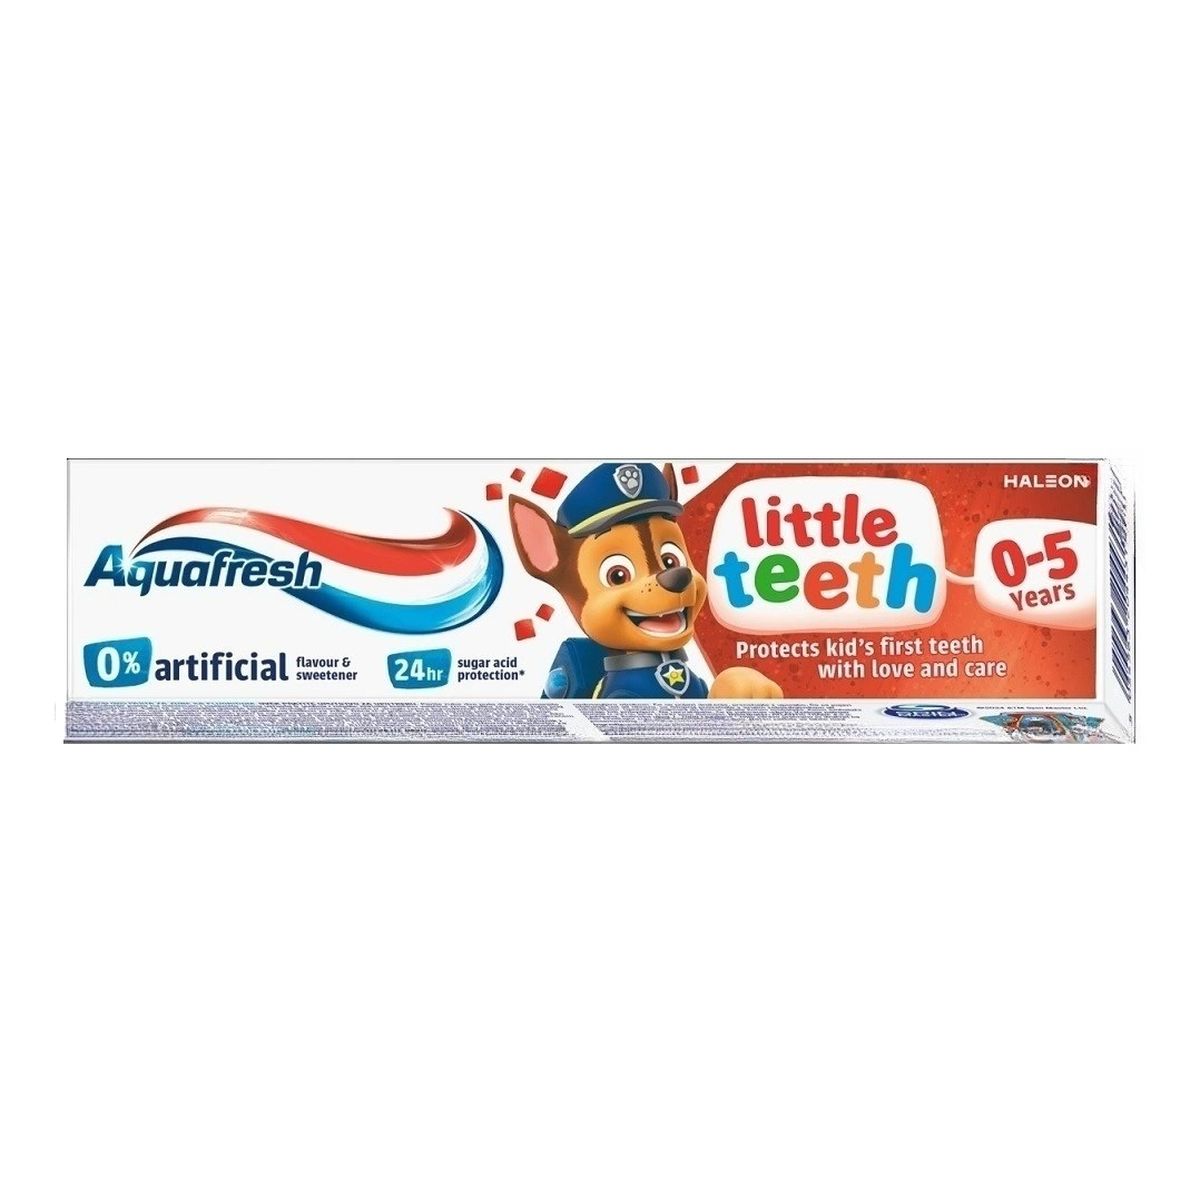 Aquafresh Little teeth pasta do zębów psi patrol 50ml